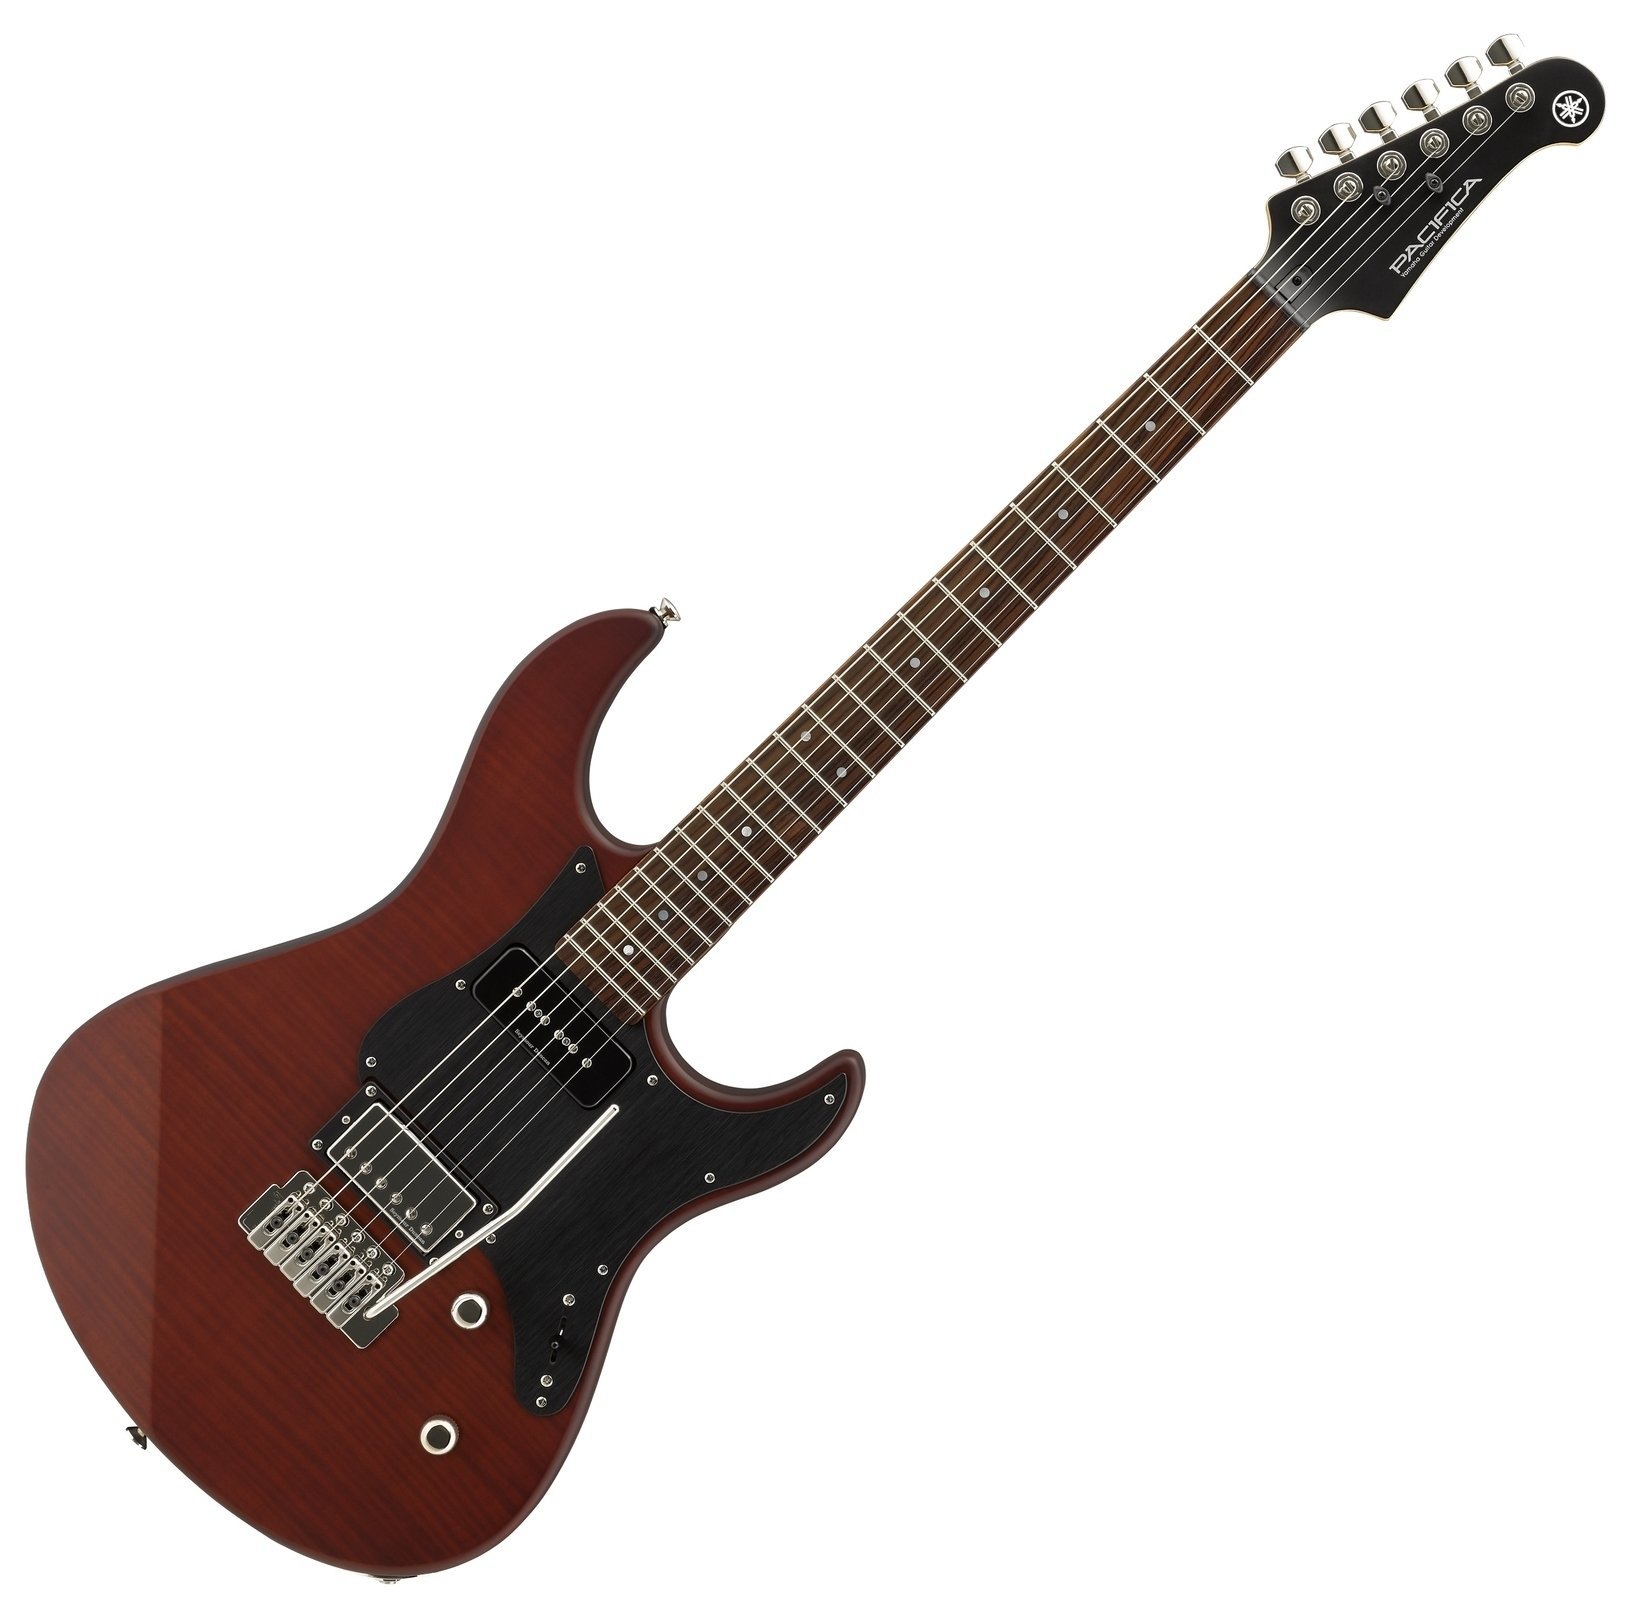 Electric guitar Yamaha Pacifica 611VFMX RB